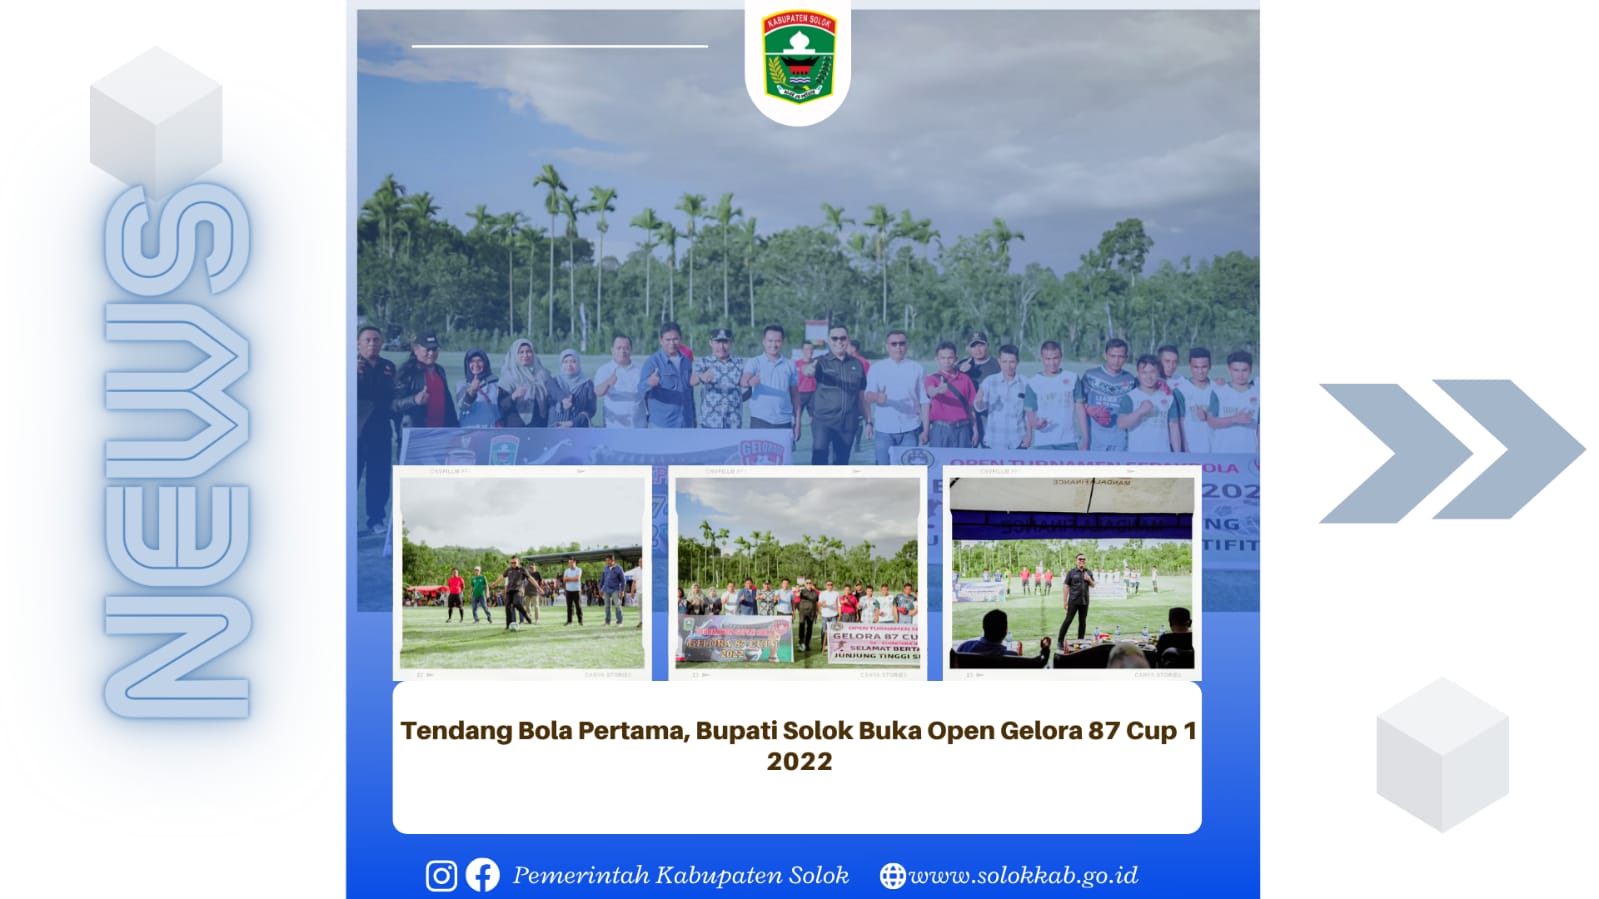 Tendang Bola Pertama, Bupati Solok Buka Open Gelora 87 Cup 1 2022